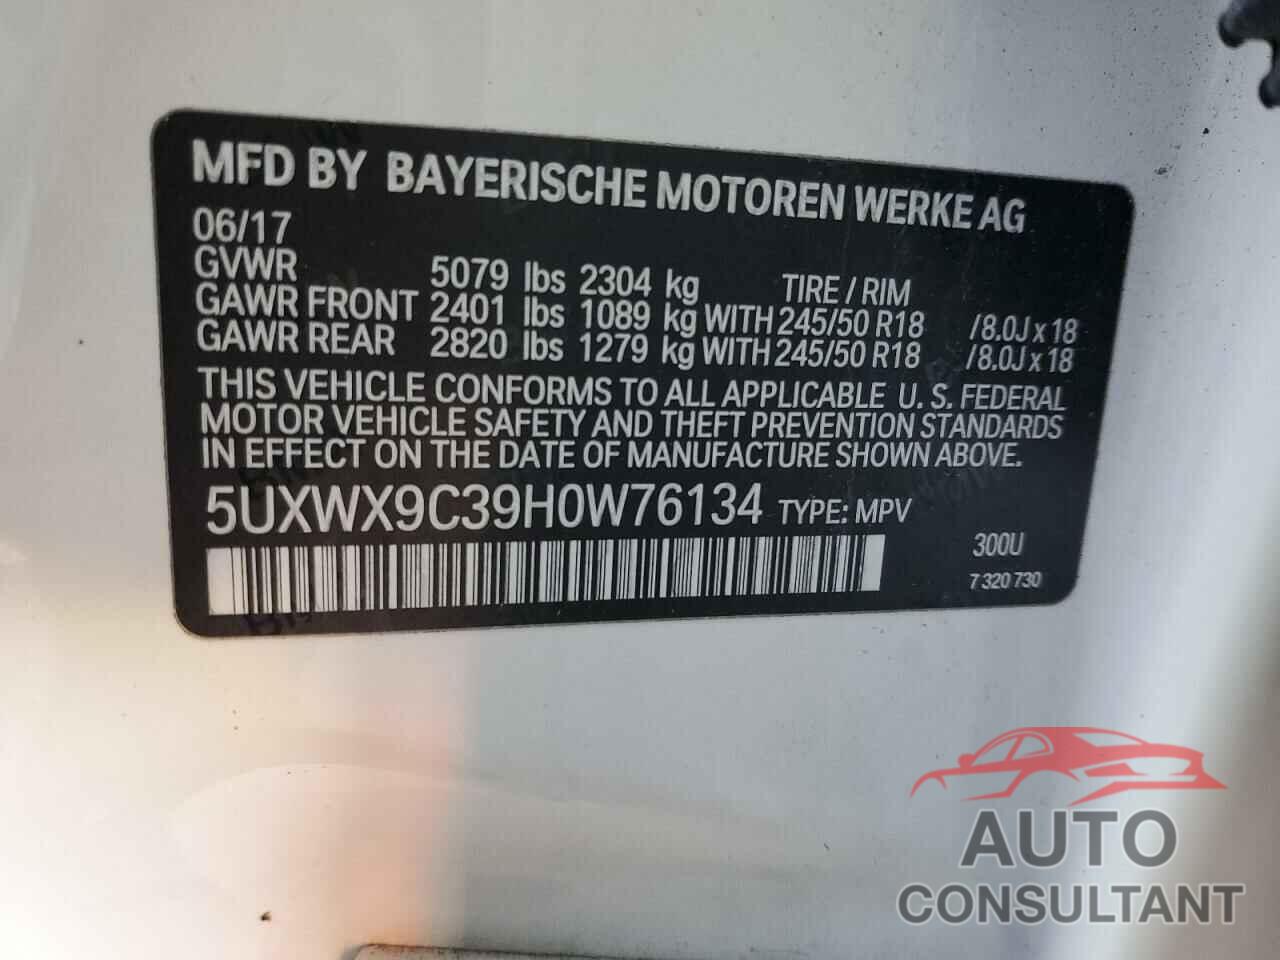 BMW X3 2017 - 5UXWX9C39H0W76134